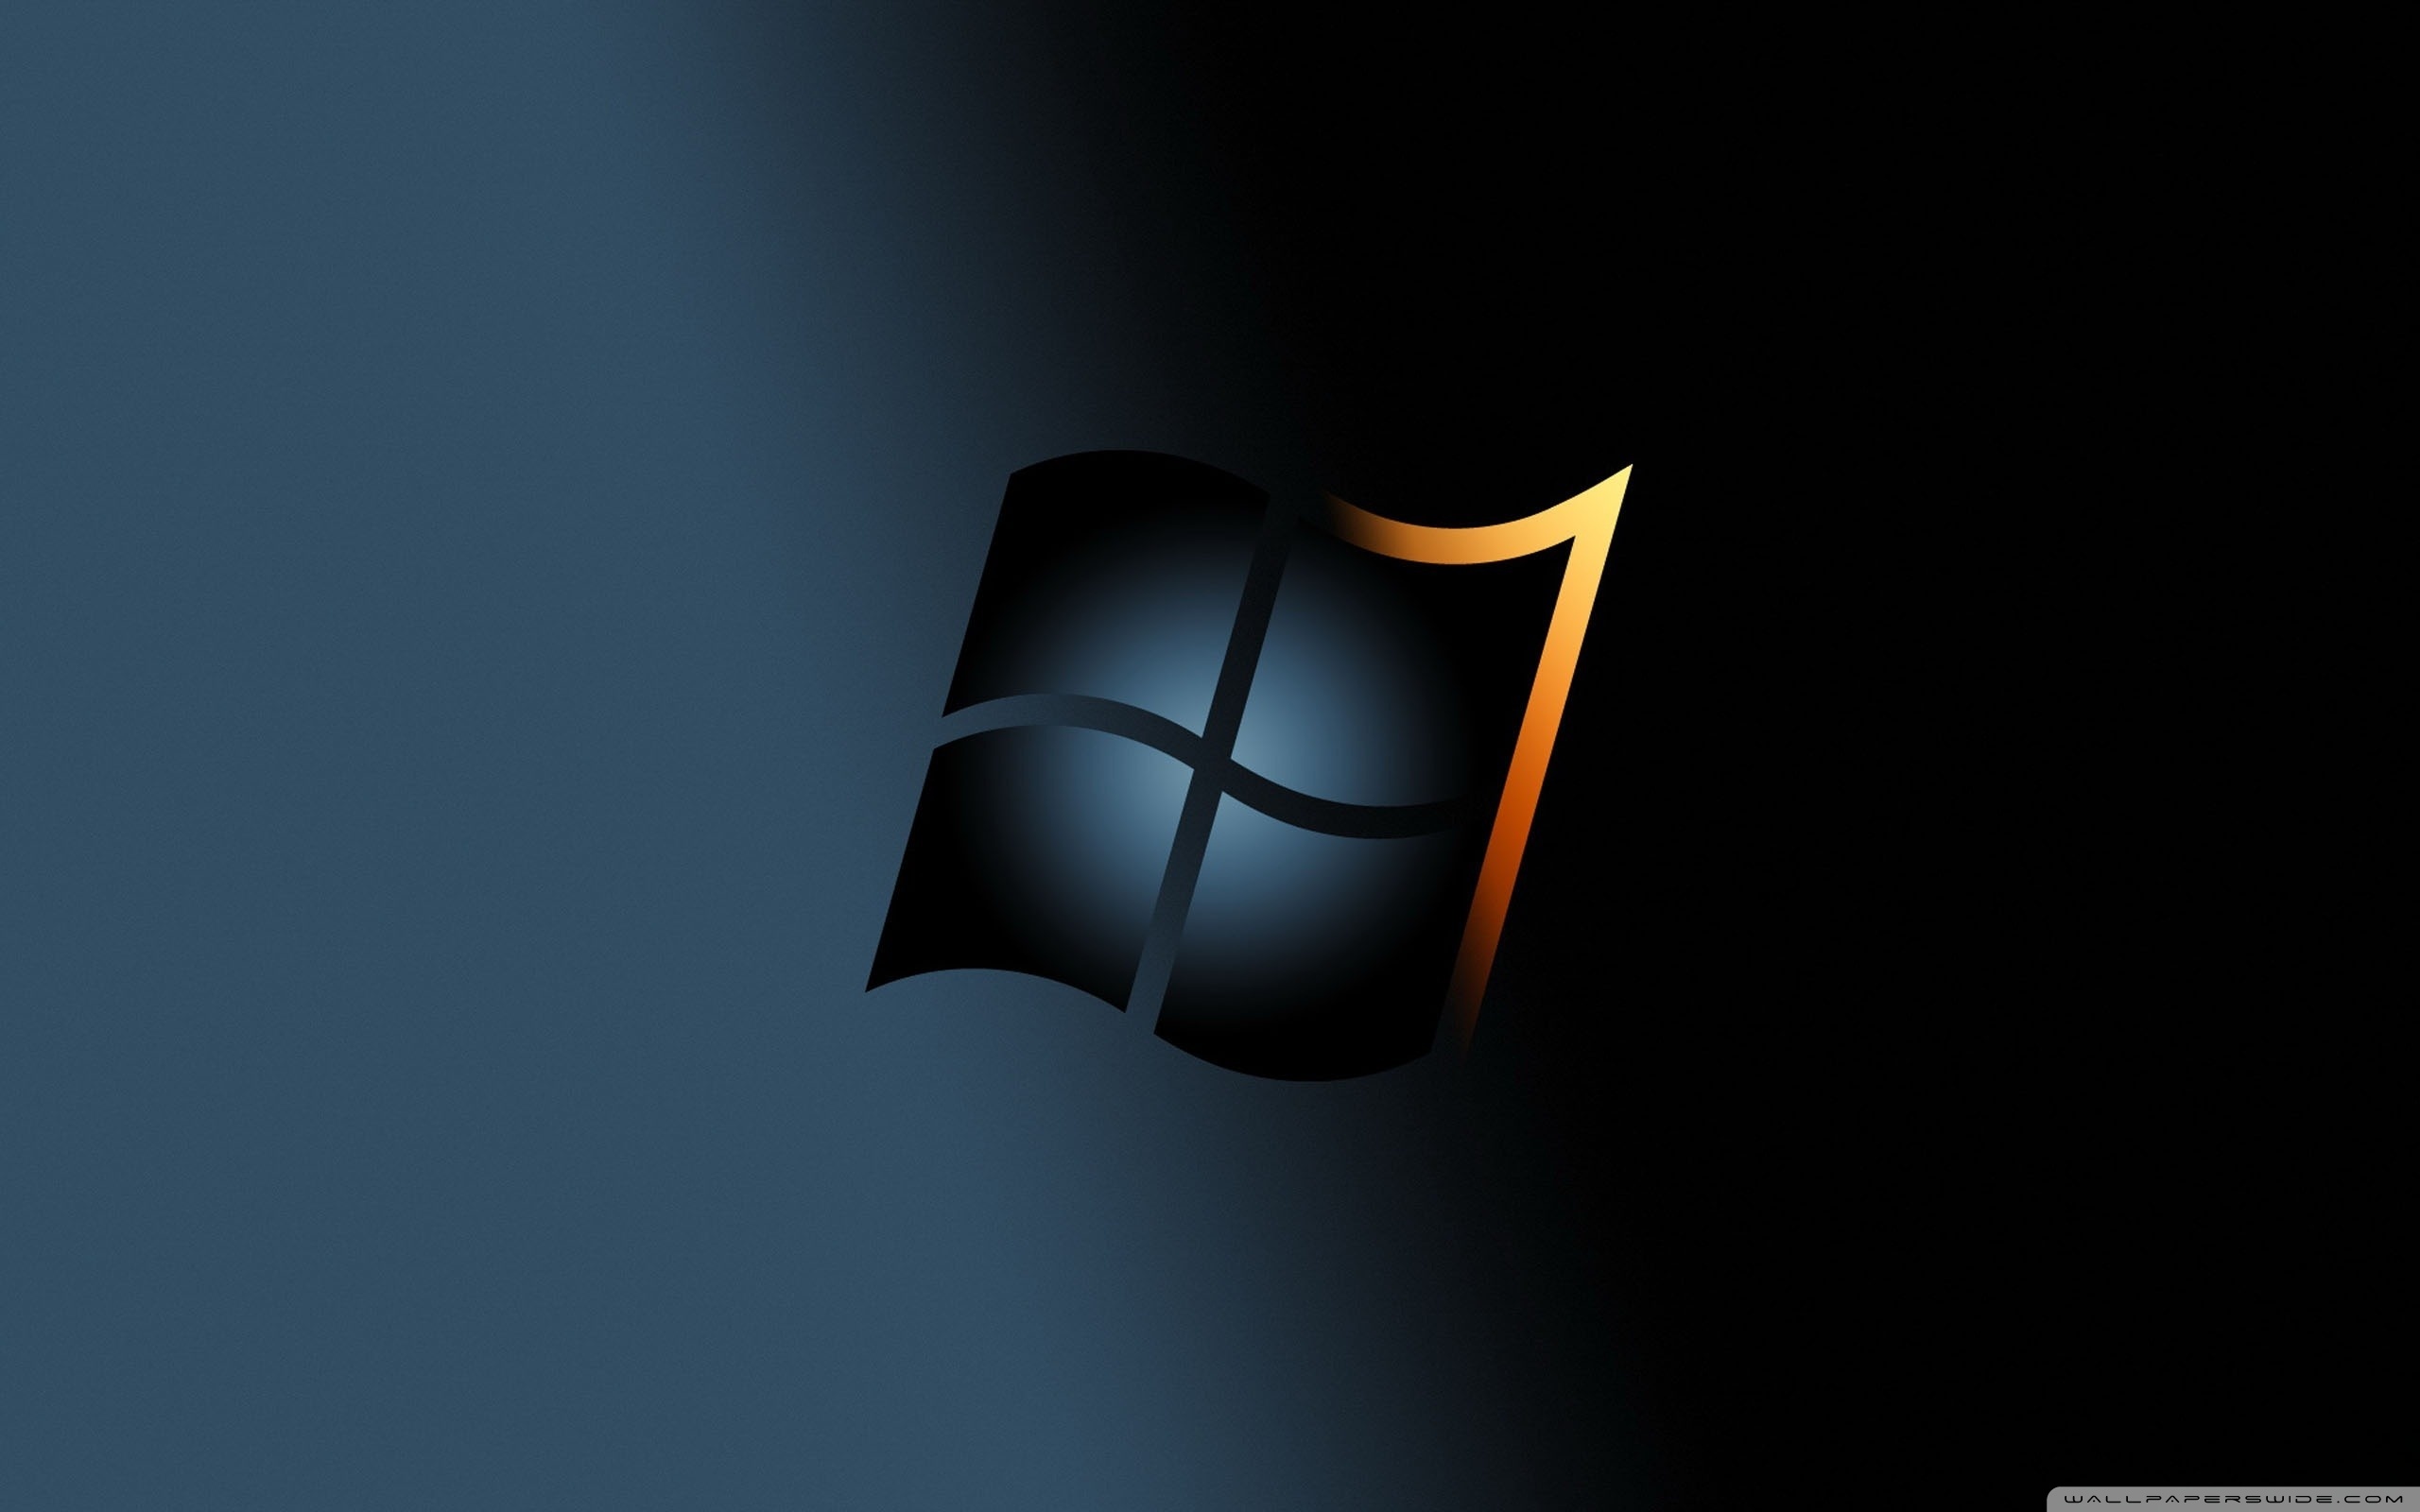 Bạn đang gặp vấn đề với nền desktop đen của mình trên hệ điều hành Windows? Đừng lo lắng, chúng tôi sẵn sàng cung cấp cho bạn các giải pháp tuyệt vời để sửa chữa tình trạng này trên các phiên bản Windows 7, 8, 8.1 &